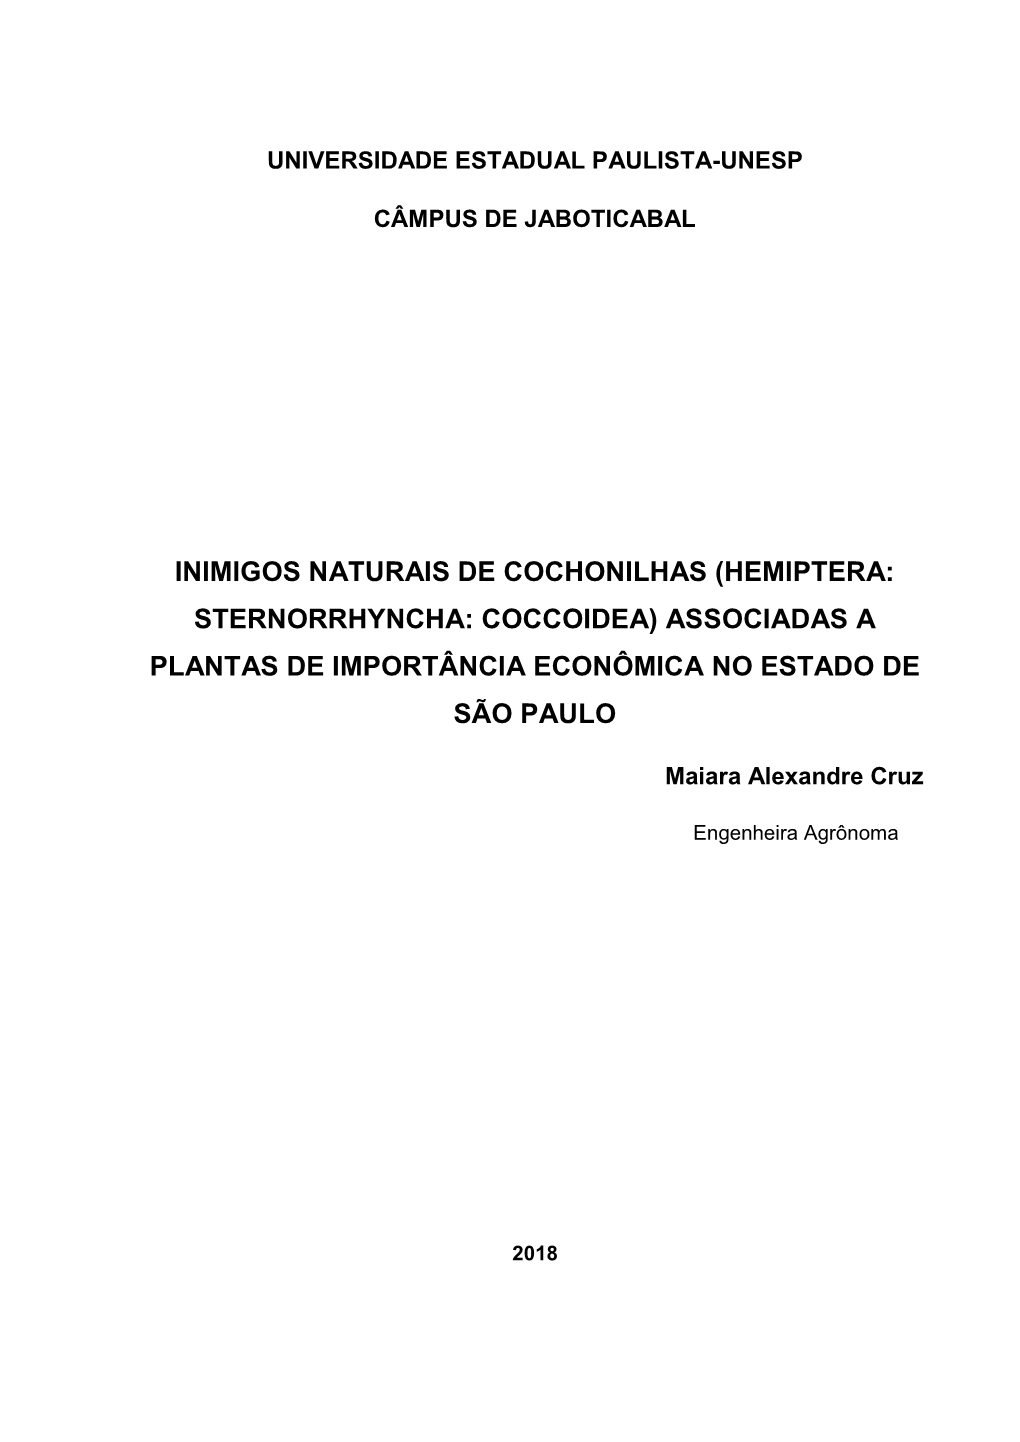 Inimigos Naturais De Cochonilhas (Hemiptera: Sternorrhyncha: Coccoidea) Associadas a Plantas De Importância Econômica No Estado De São Paulo